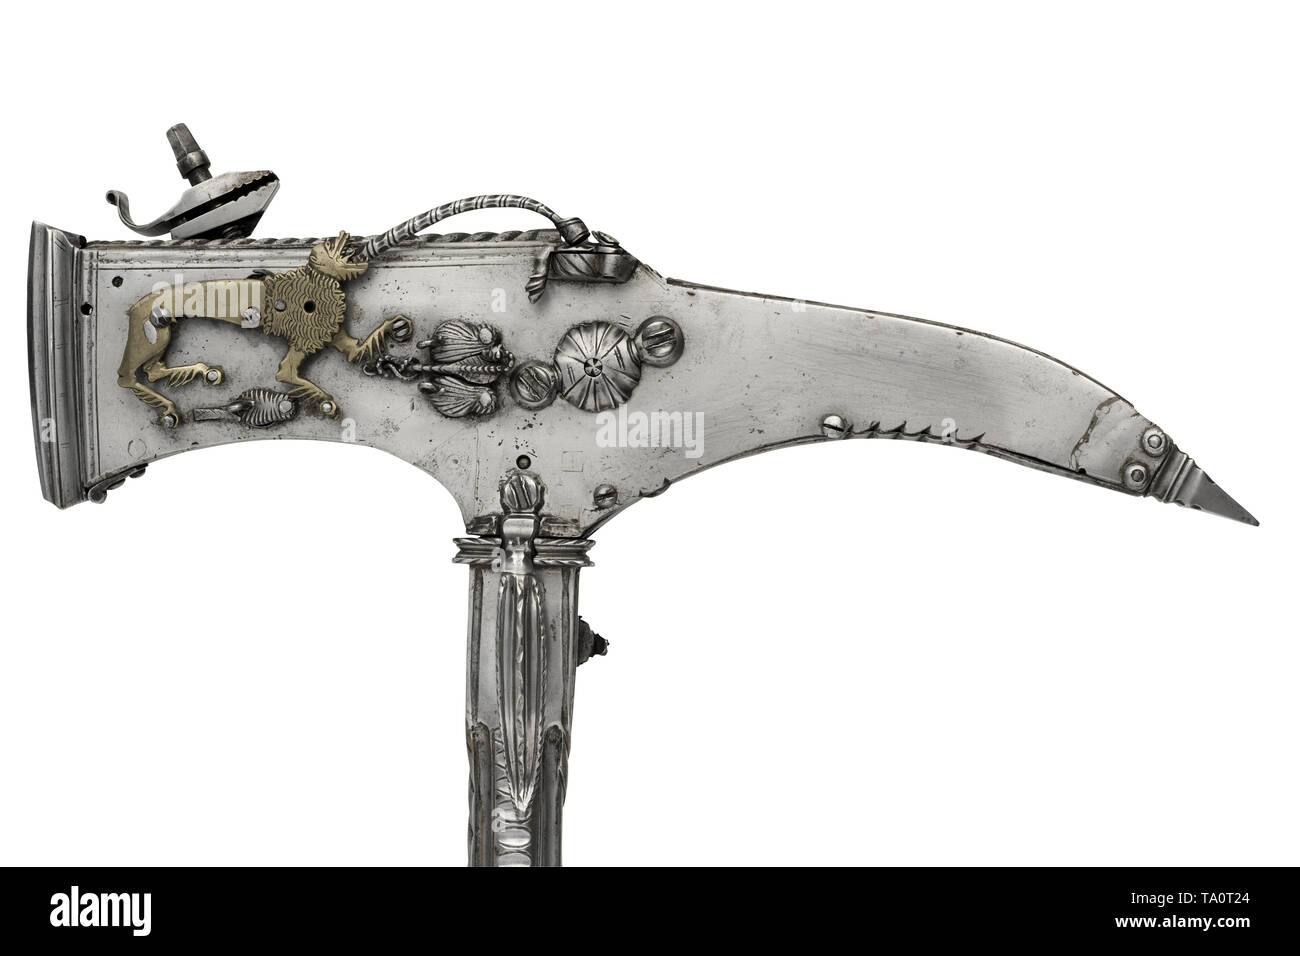 Wheellock Kombination ax und Pistole, möglicherweise Iberischen oder Deutsch, Anfang des 17. Jahrhunderts. Stockfoto